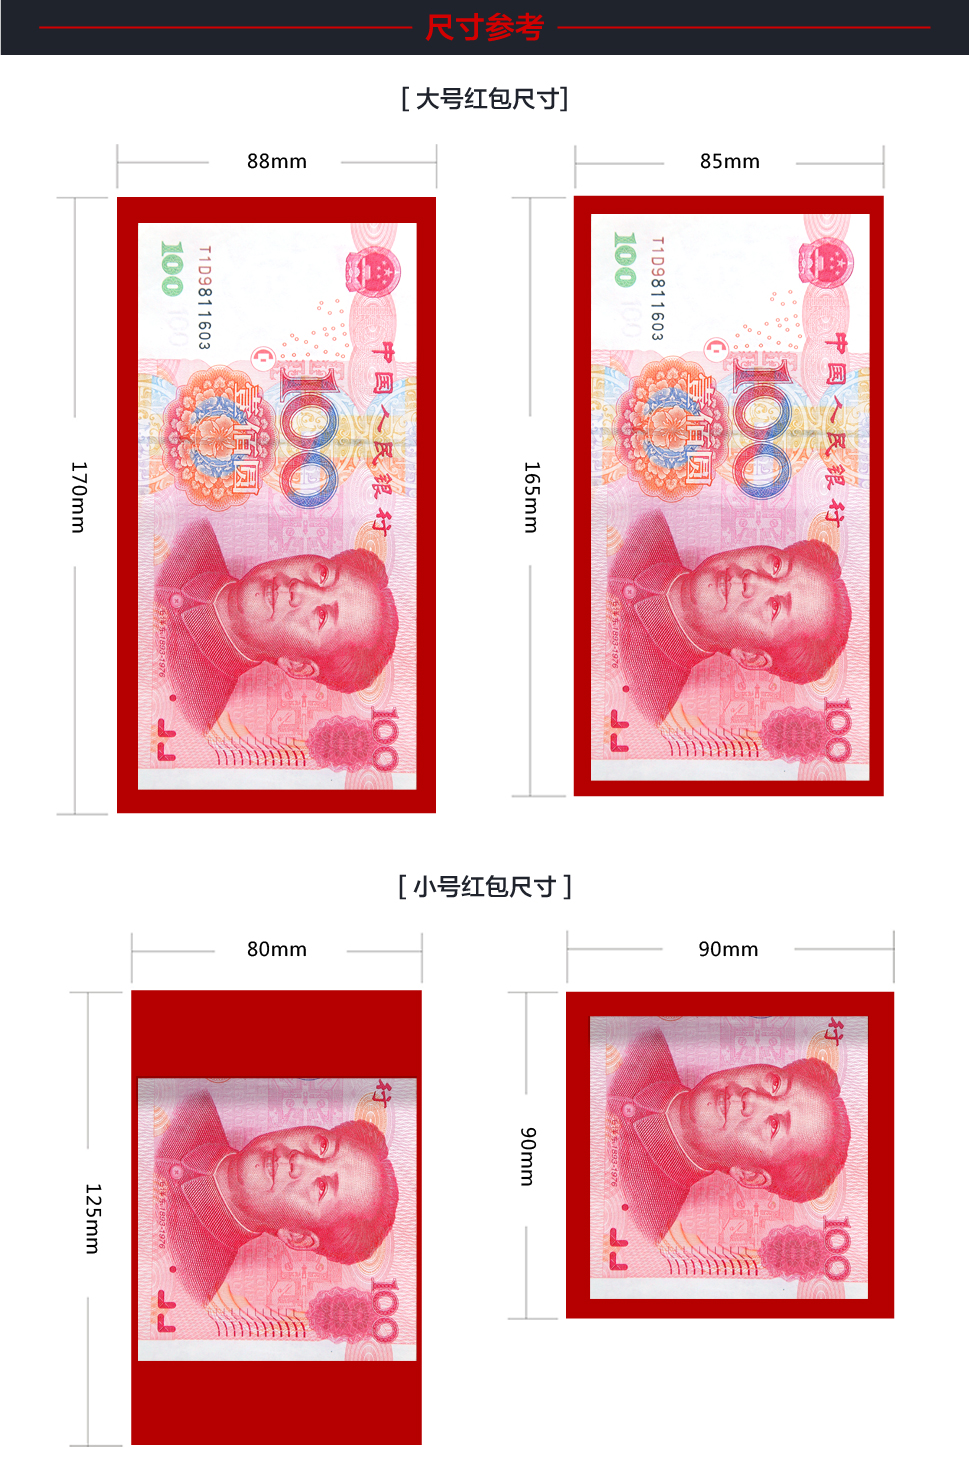 定做专版红包|广告利事封|批发新年红包|广州高档烫金利是封印刷